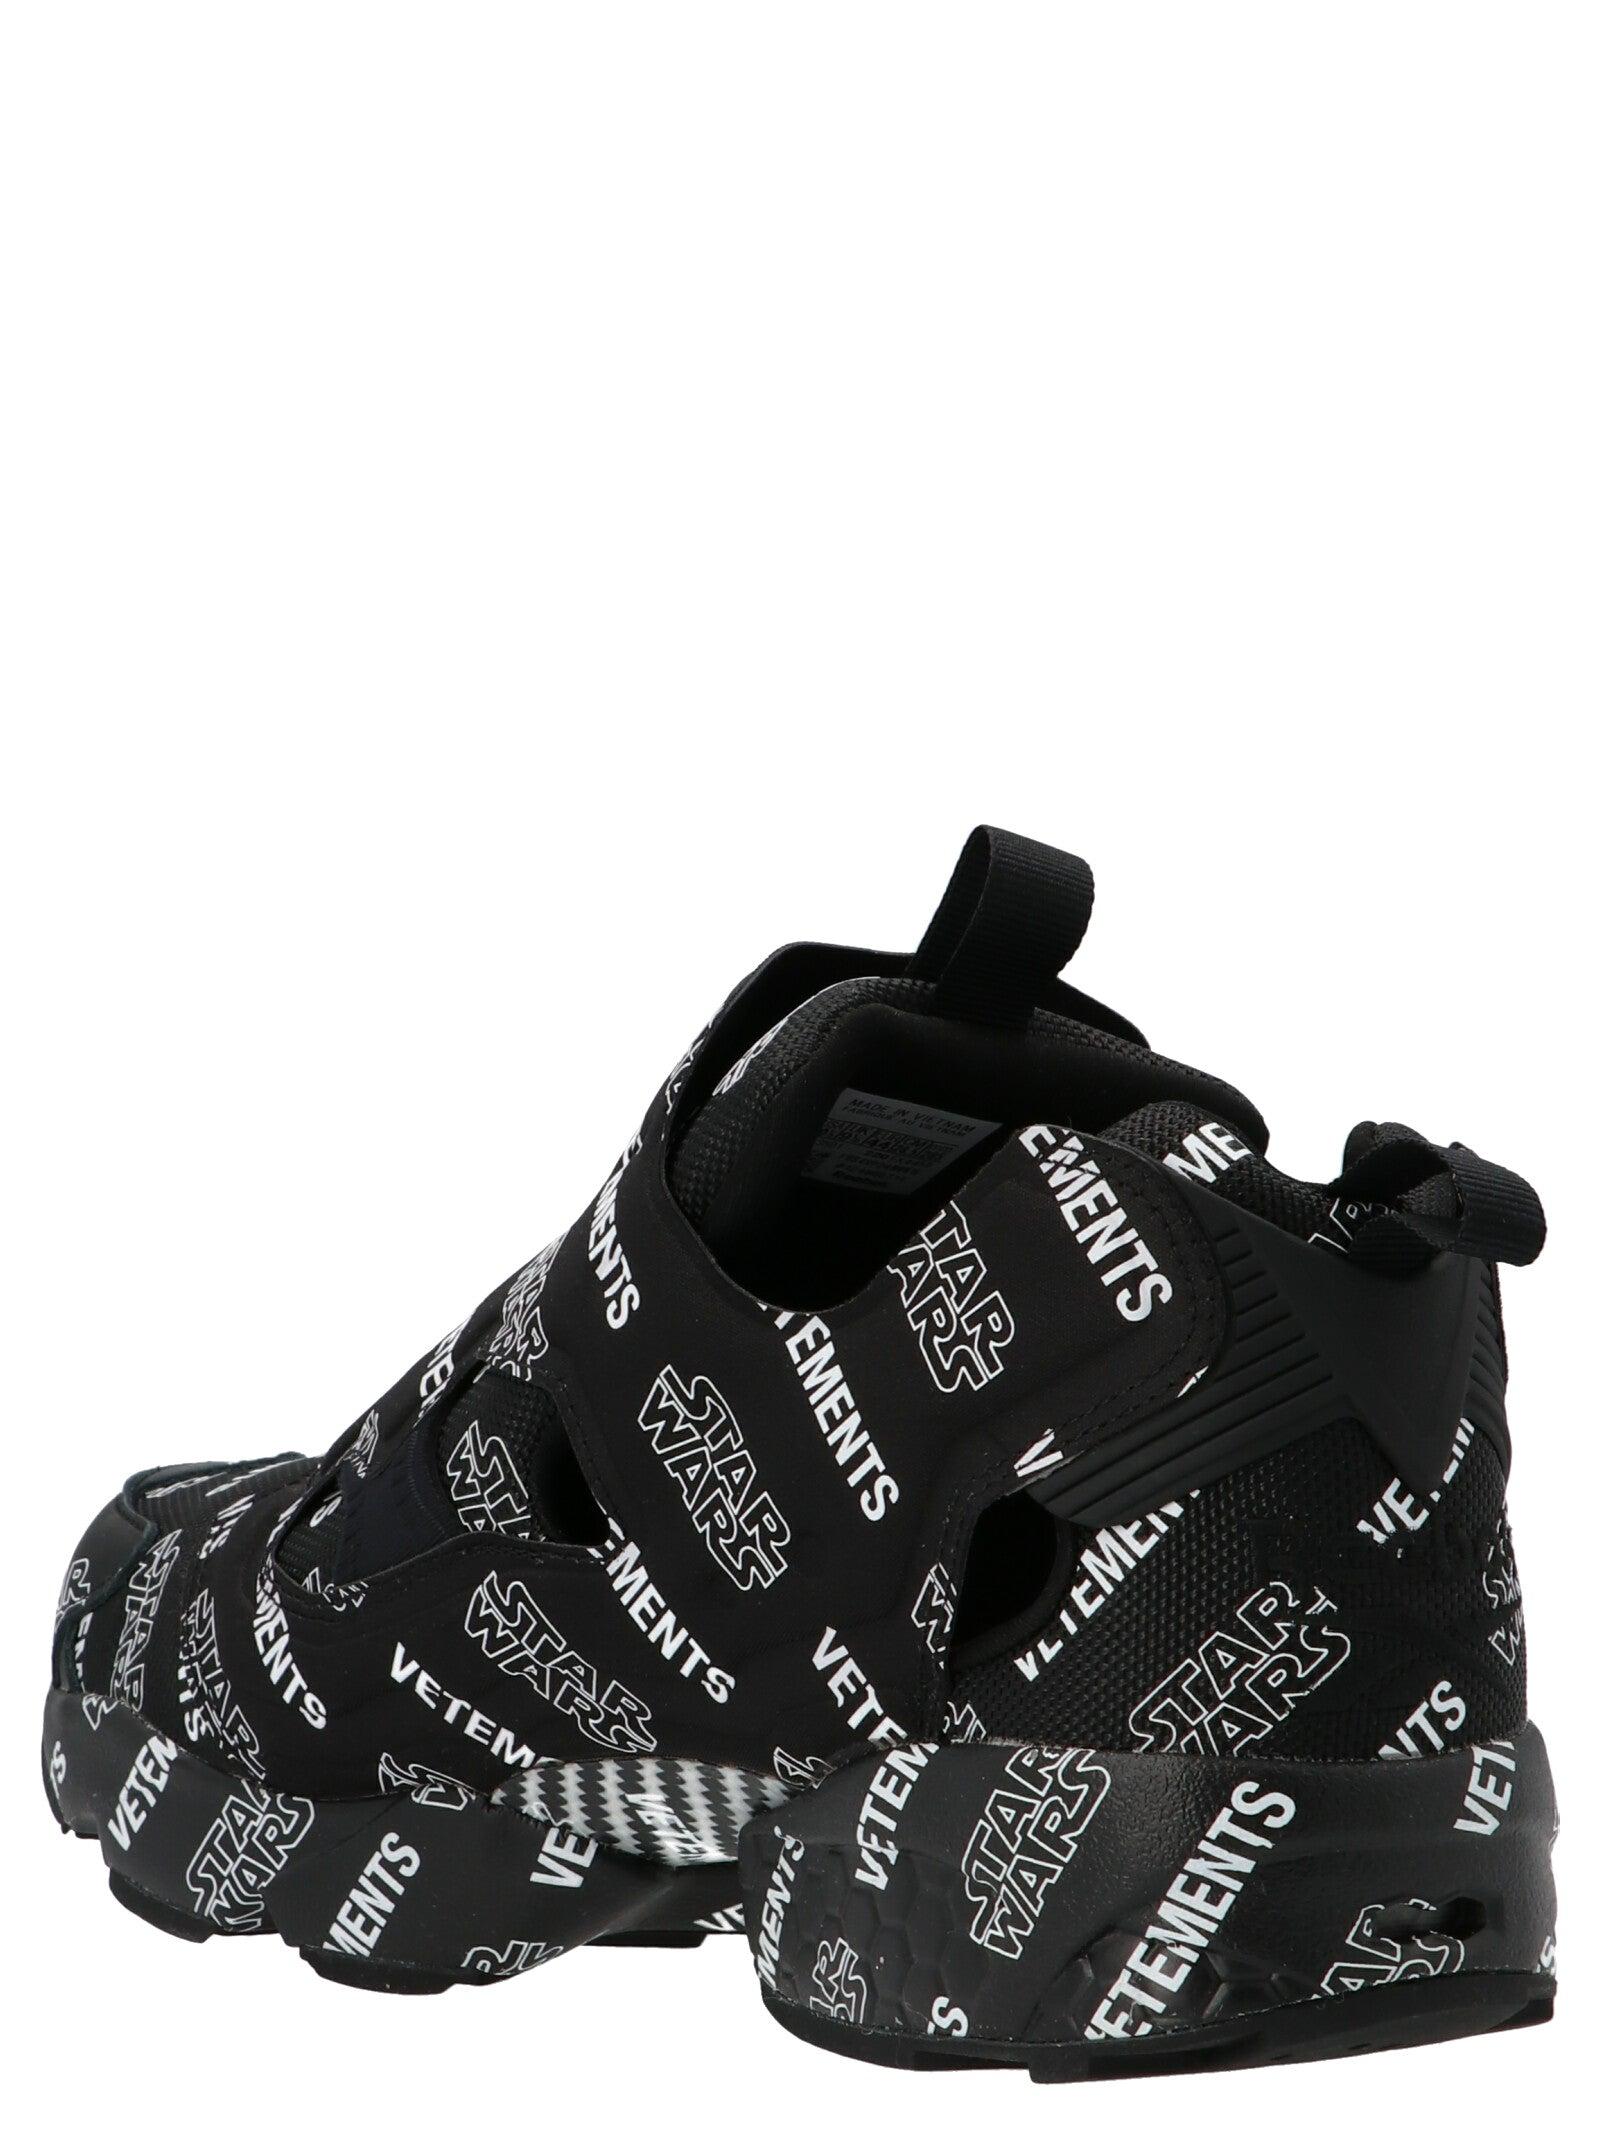 Vetements 'star Wars Instapump Fury' X Reebok Sneakers in Black | Lyst